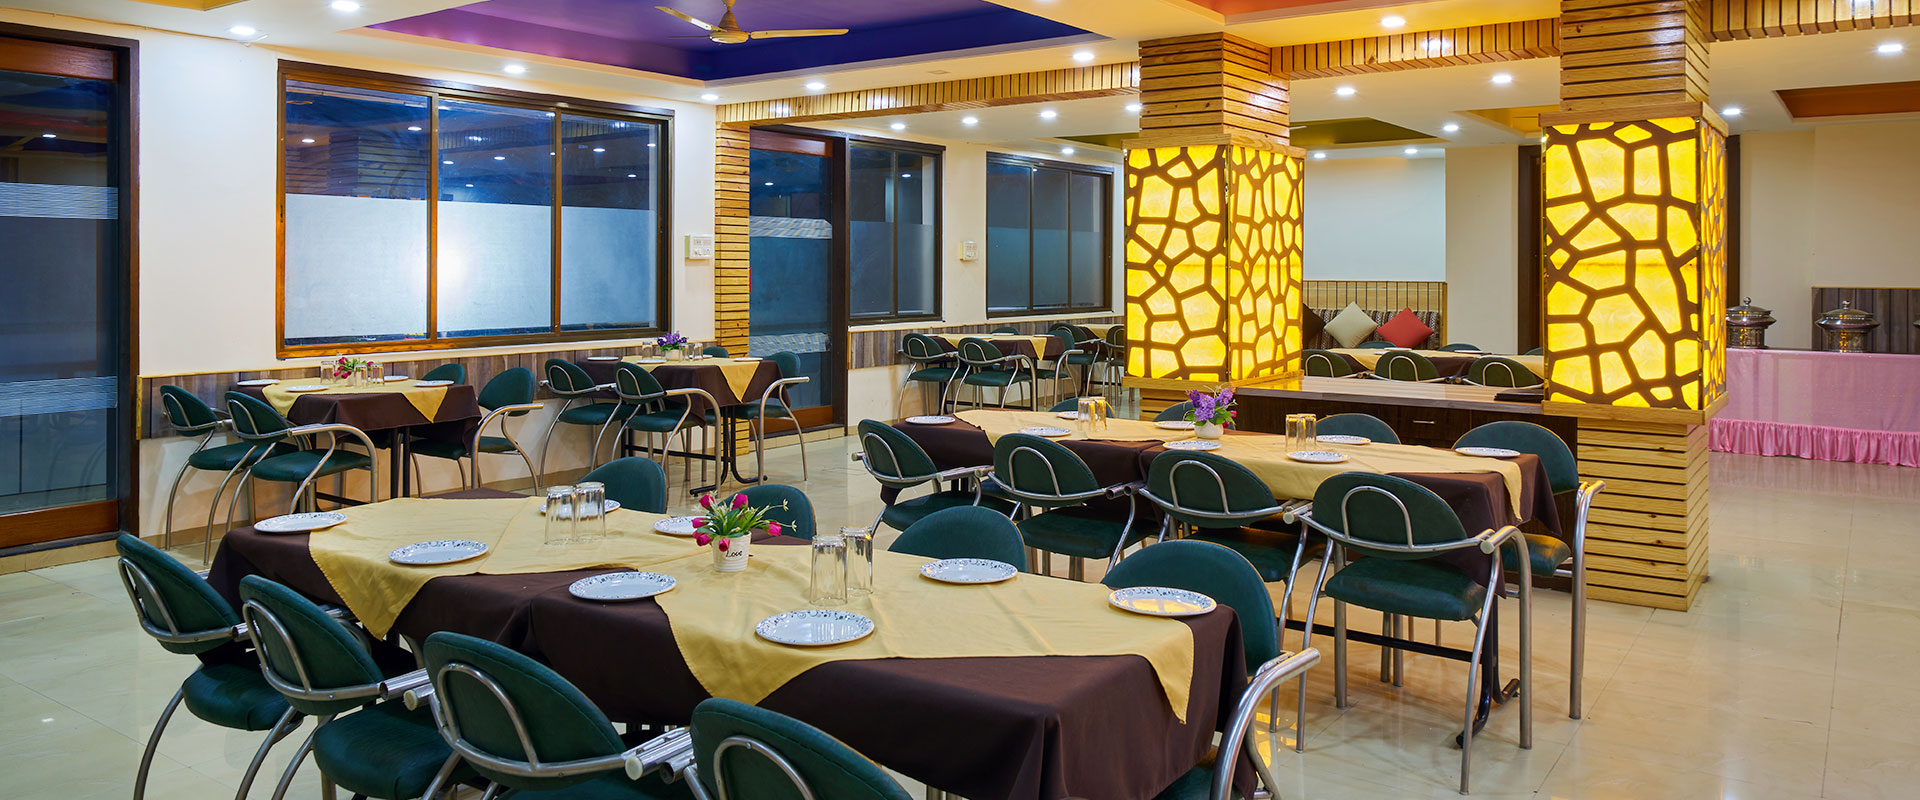 Hotel Ganeshratna-Restaurant